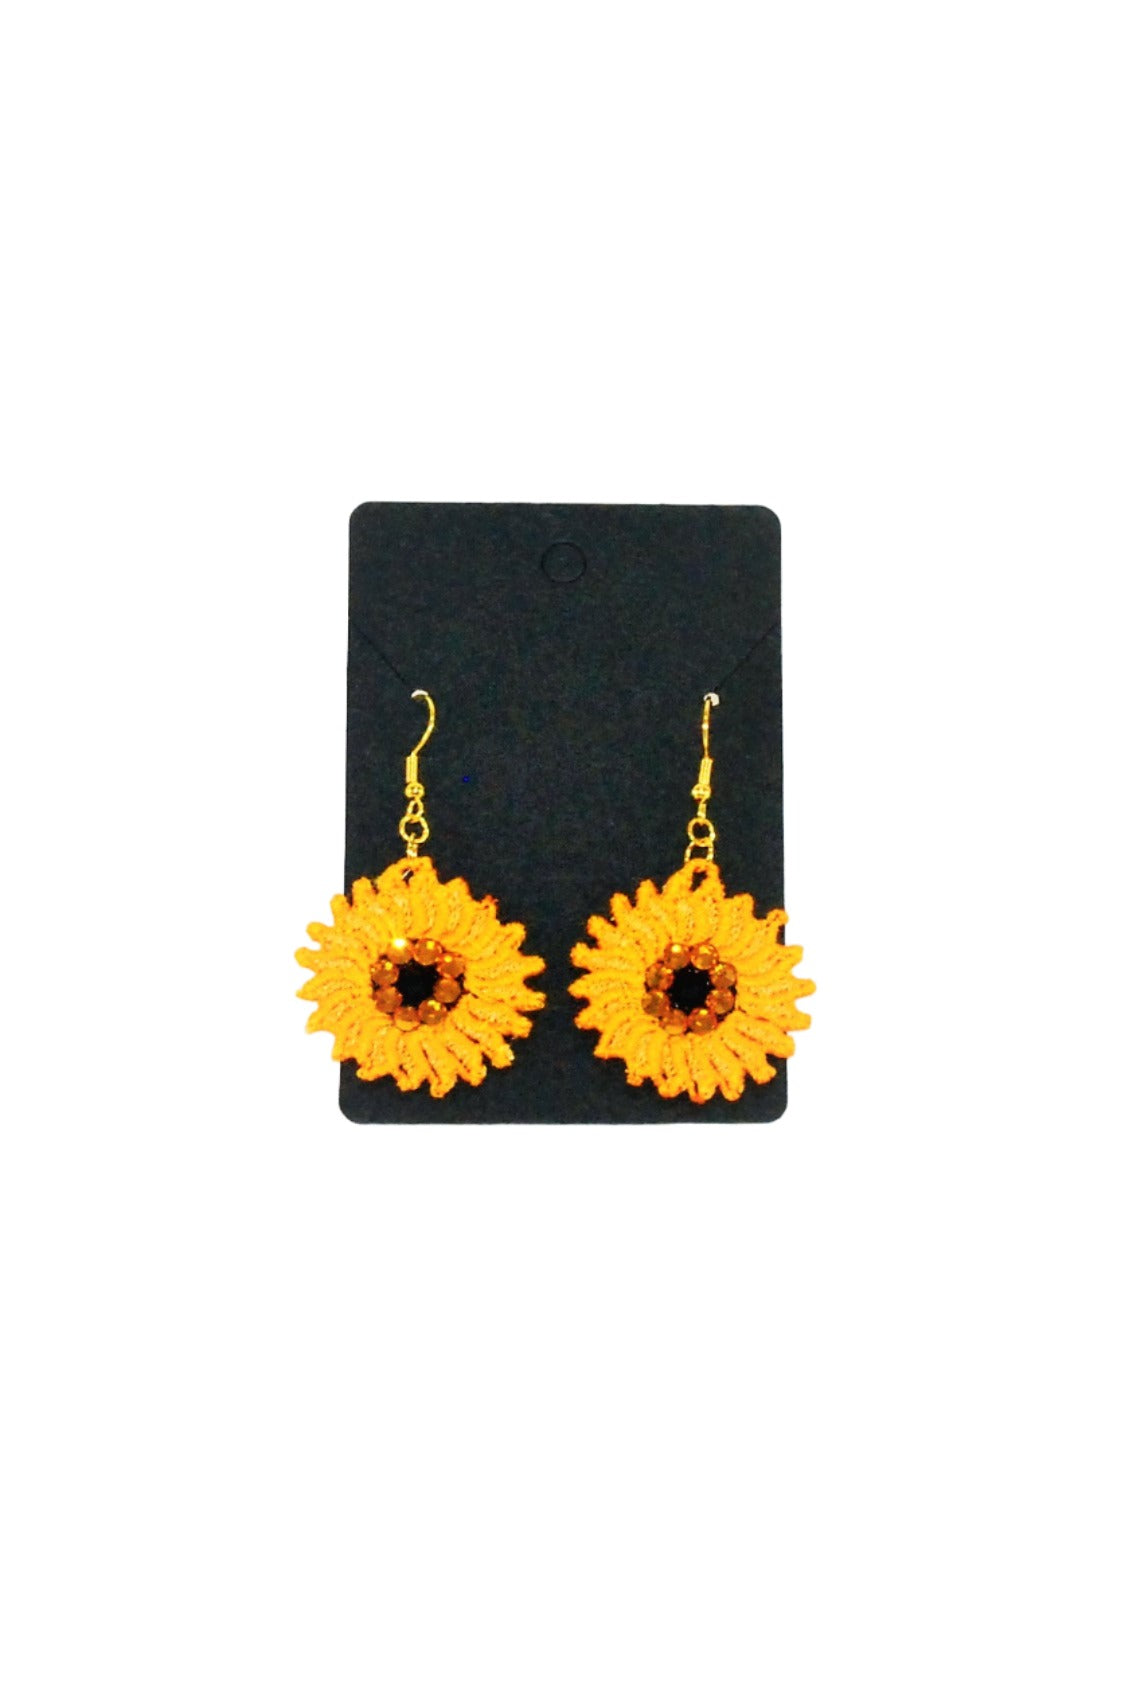 Lace earrings "Sunflowers"